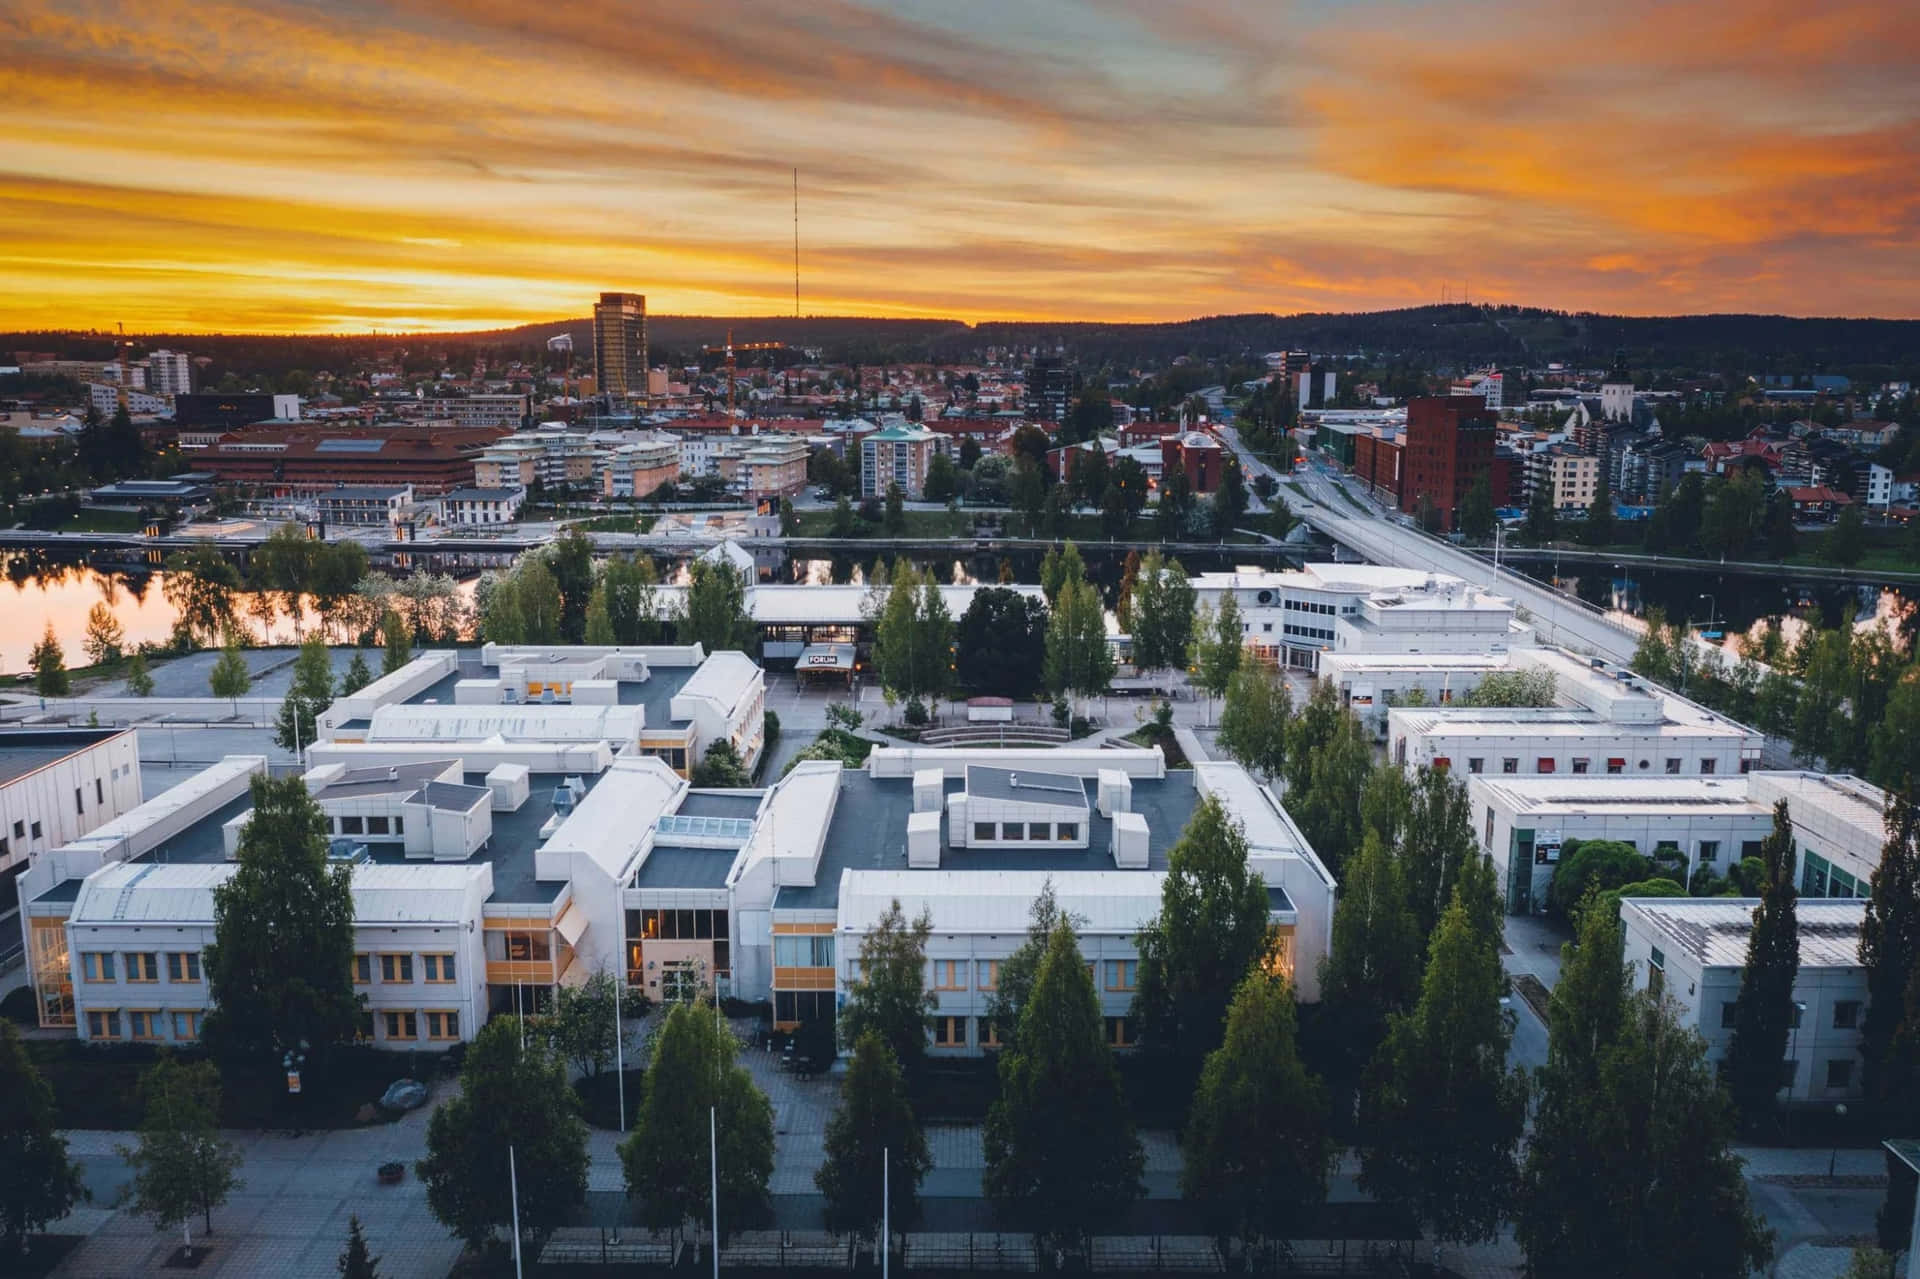 Skelleftea Sweden Sunset Aerial View Wallpaper